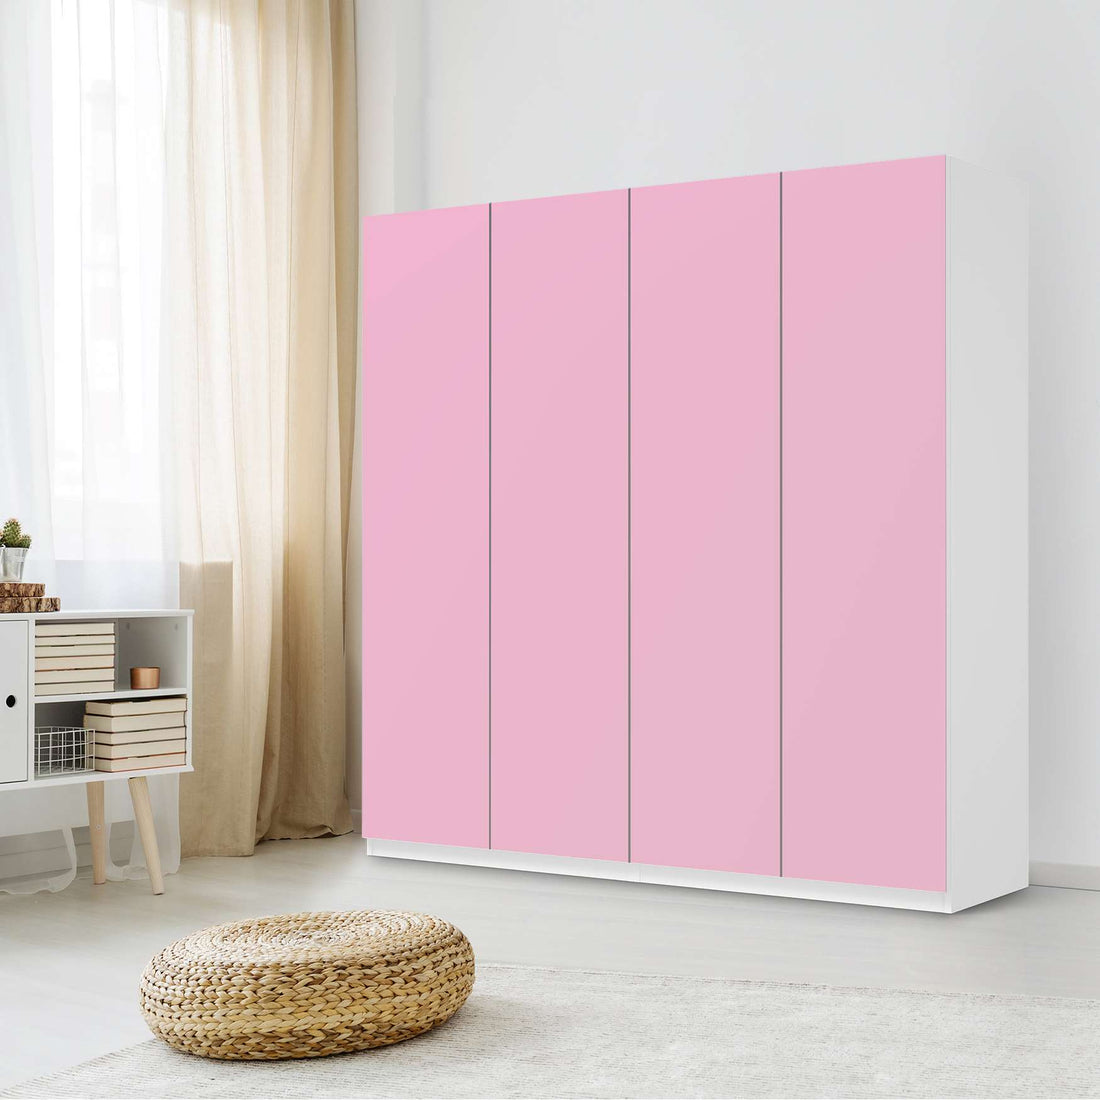 Klebefolie für Schränke Pink Light - IKEA Pax Schrank 201 cm Höhe - 4 Türen - Schlafzimmer